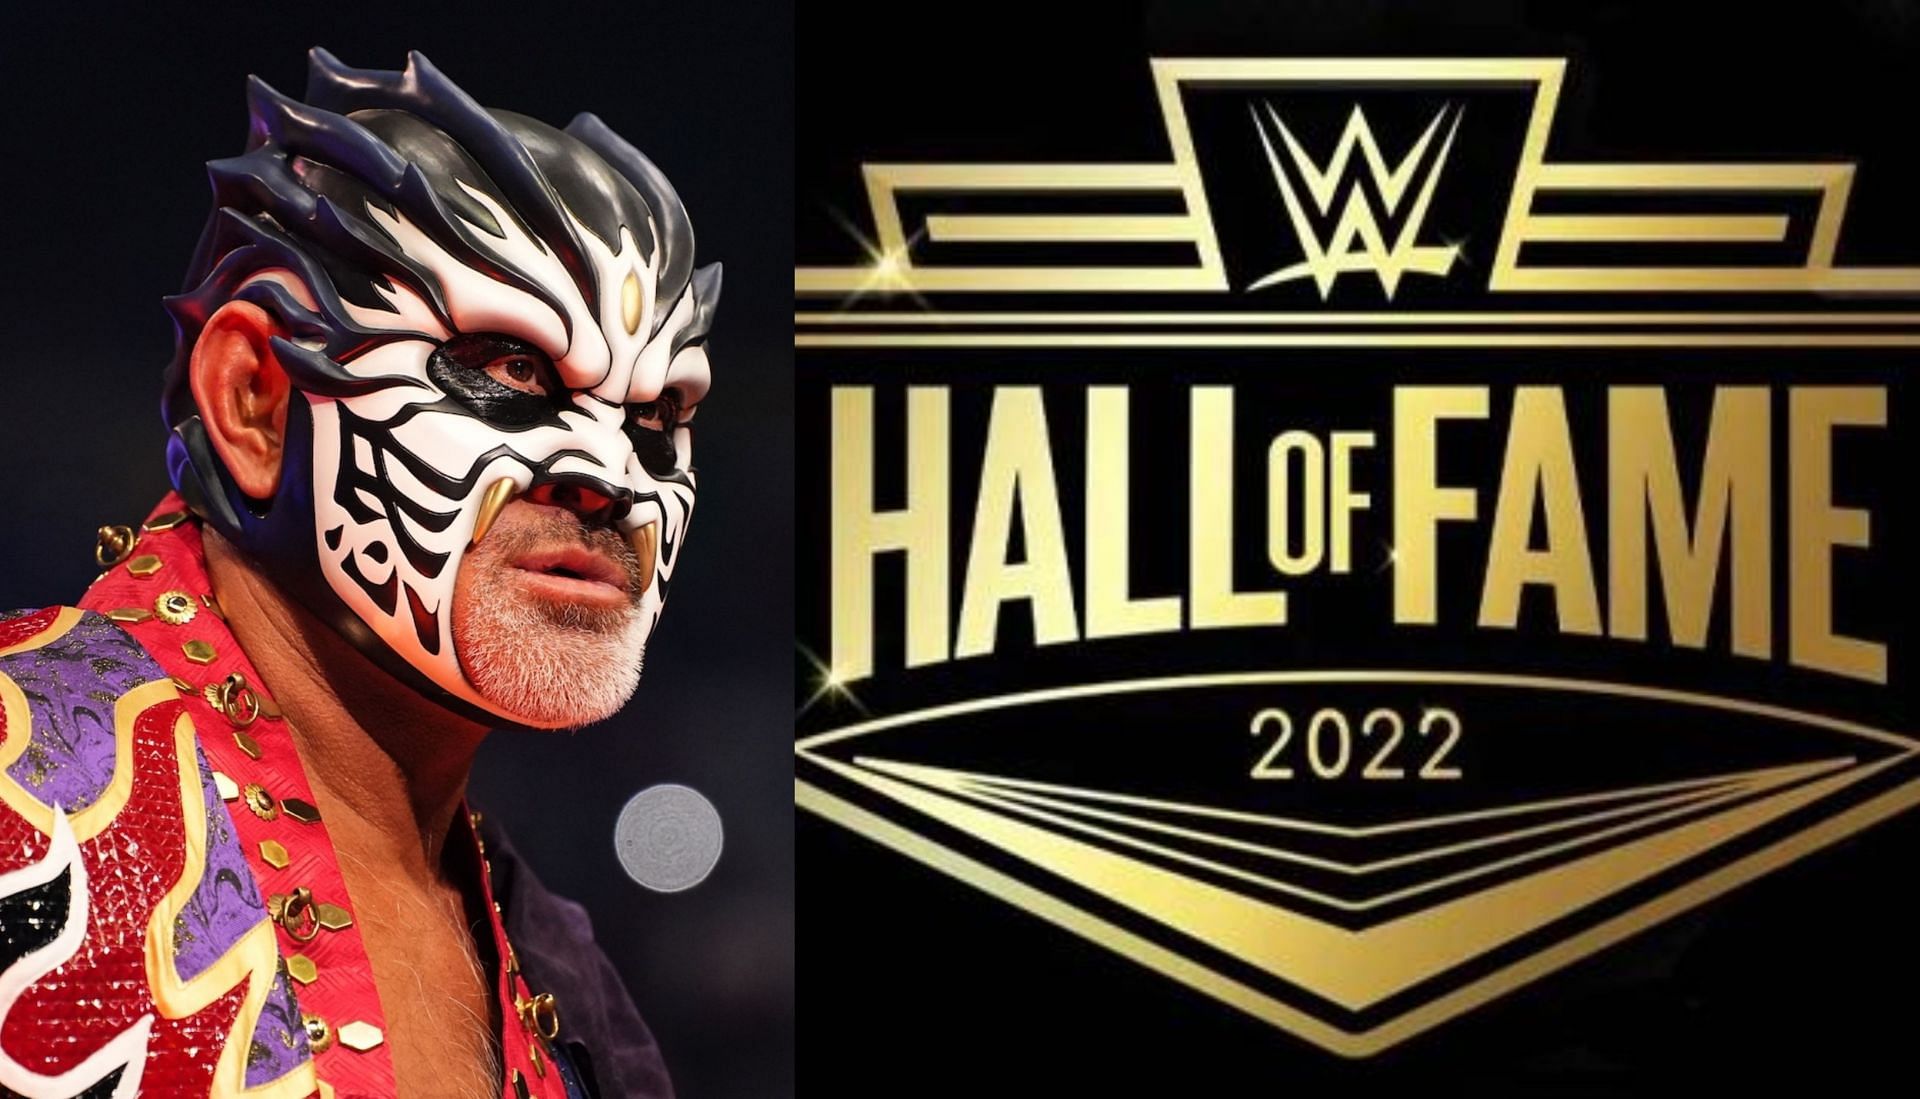 WWE ने रेसलिंग दिग्गज को किया Hall of Fame में शामिल 